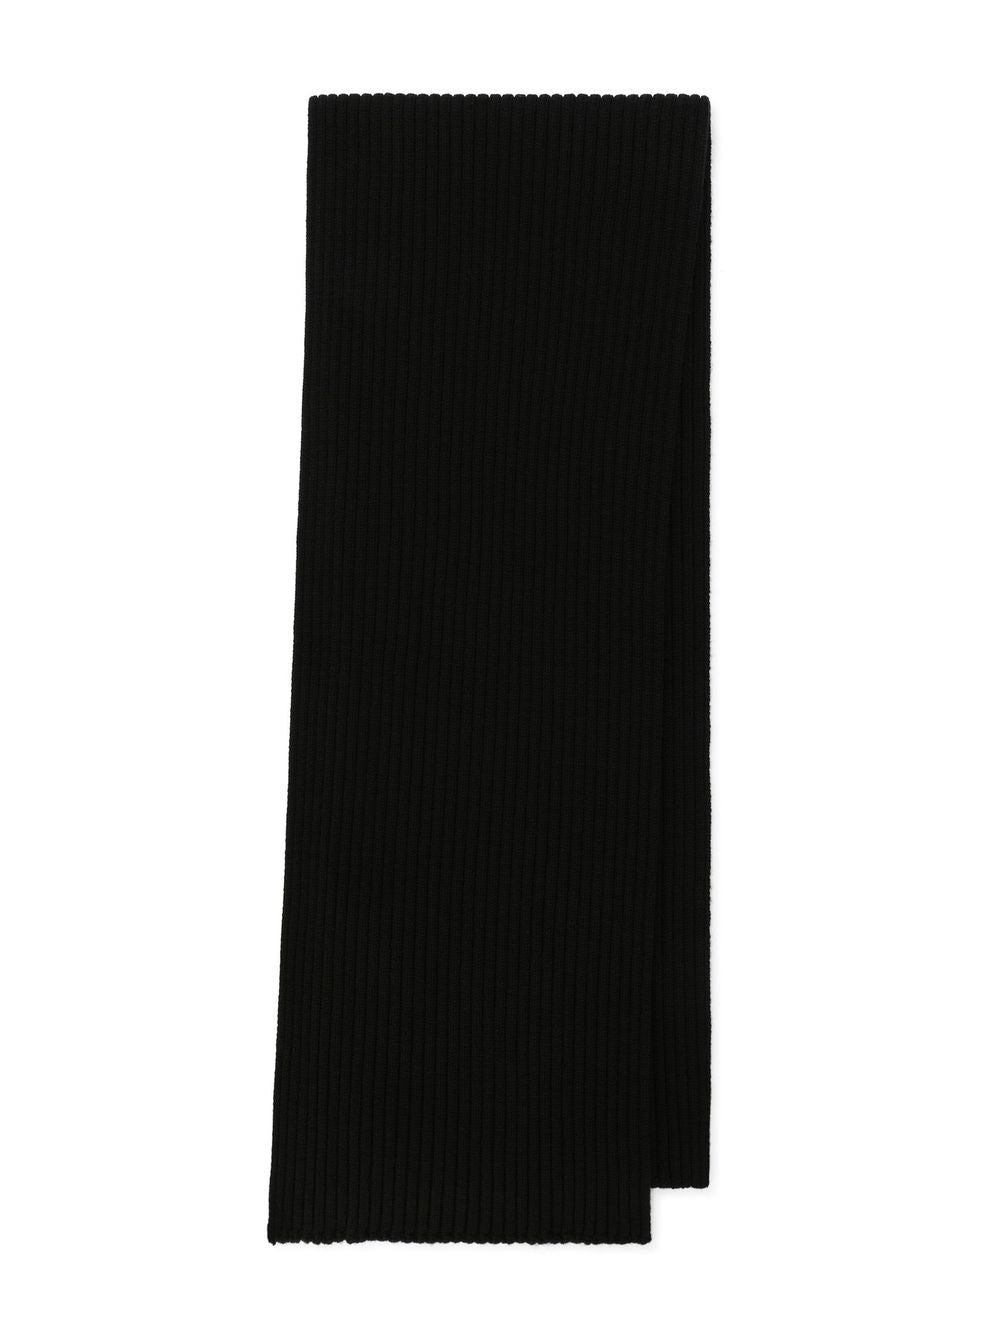 Unisex scarf in black wool